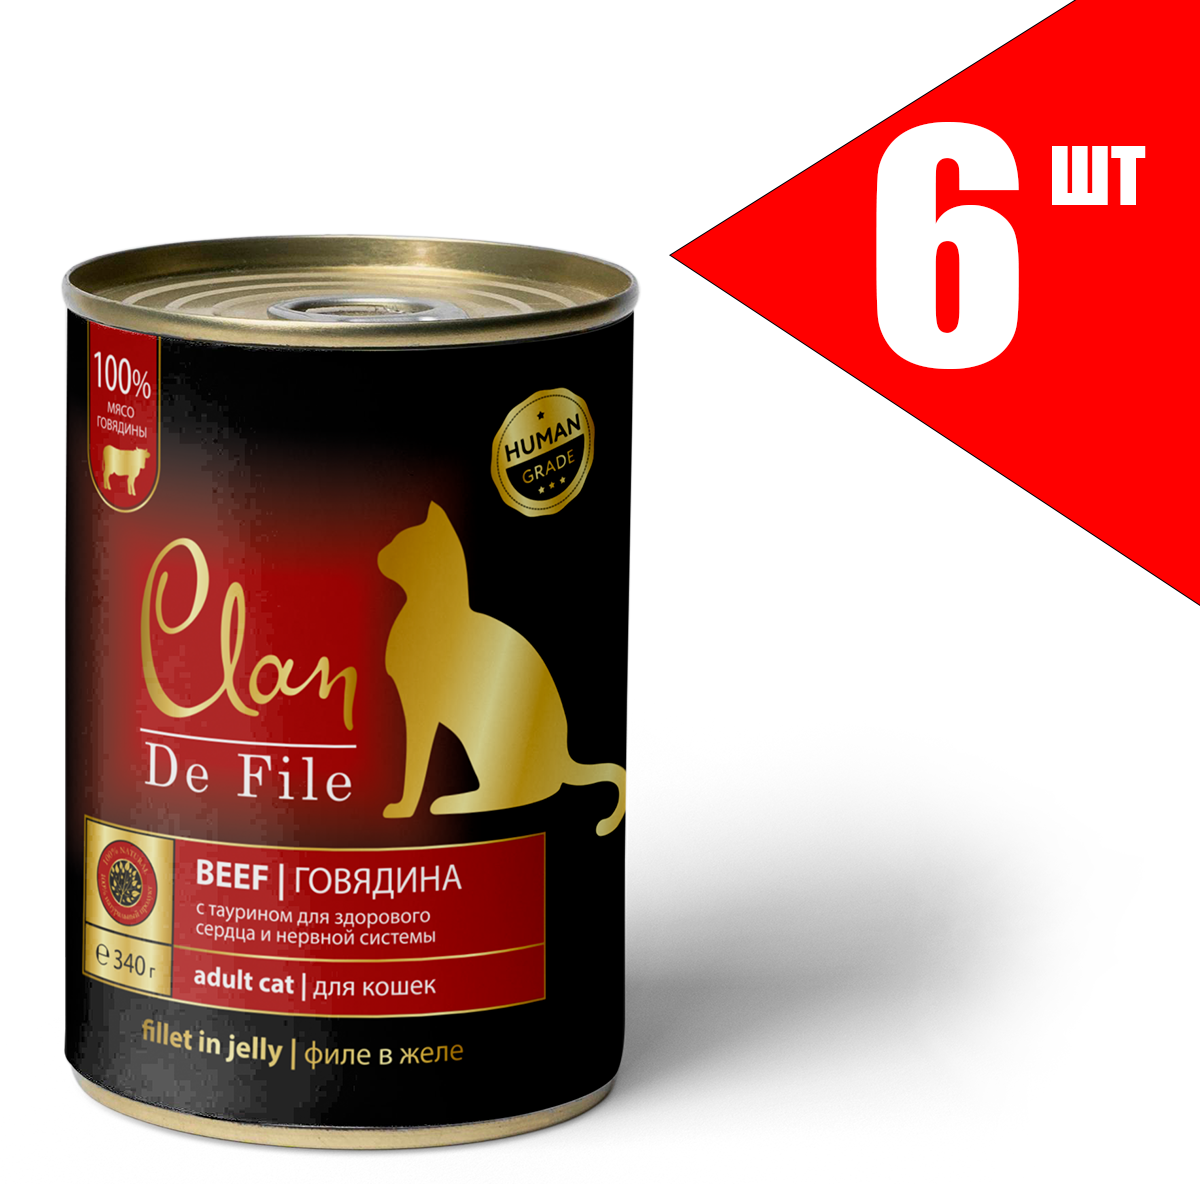 Консервы для кошек Clan De File с говядиной, 6шт по 340г